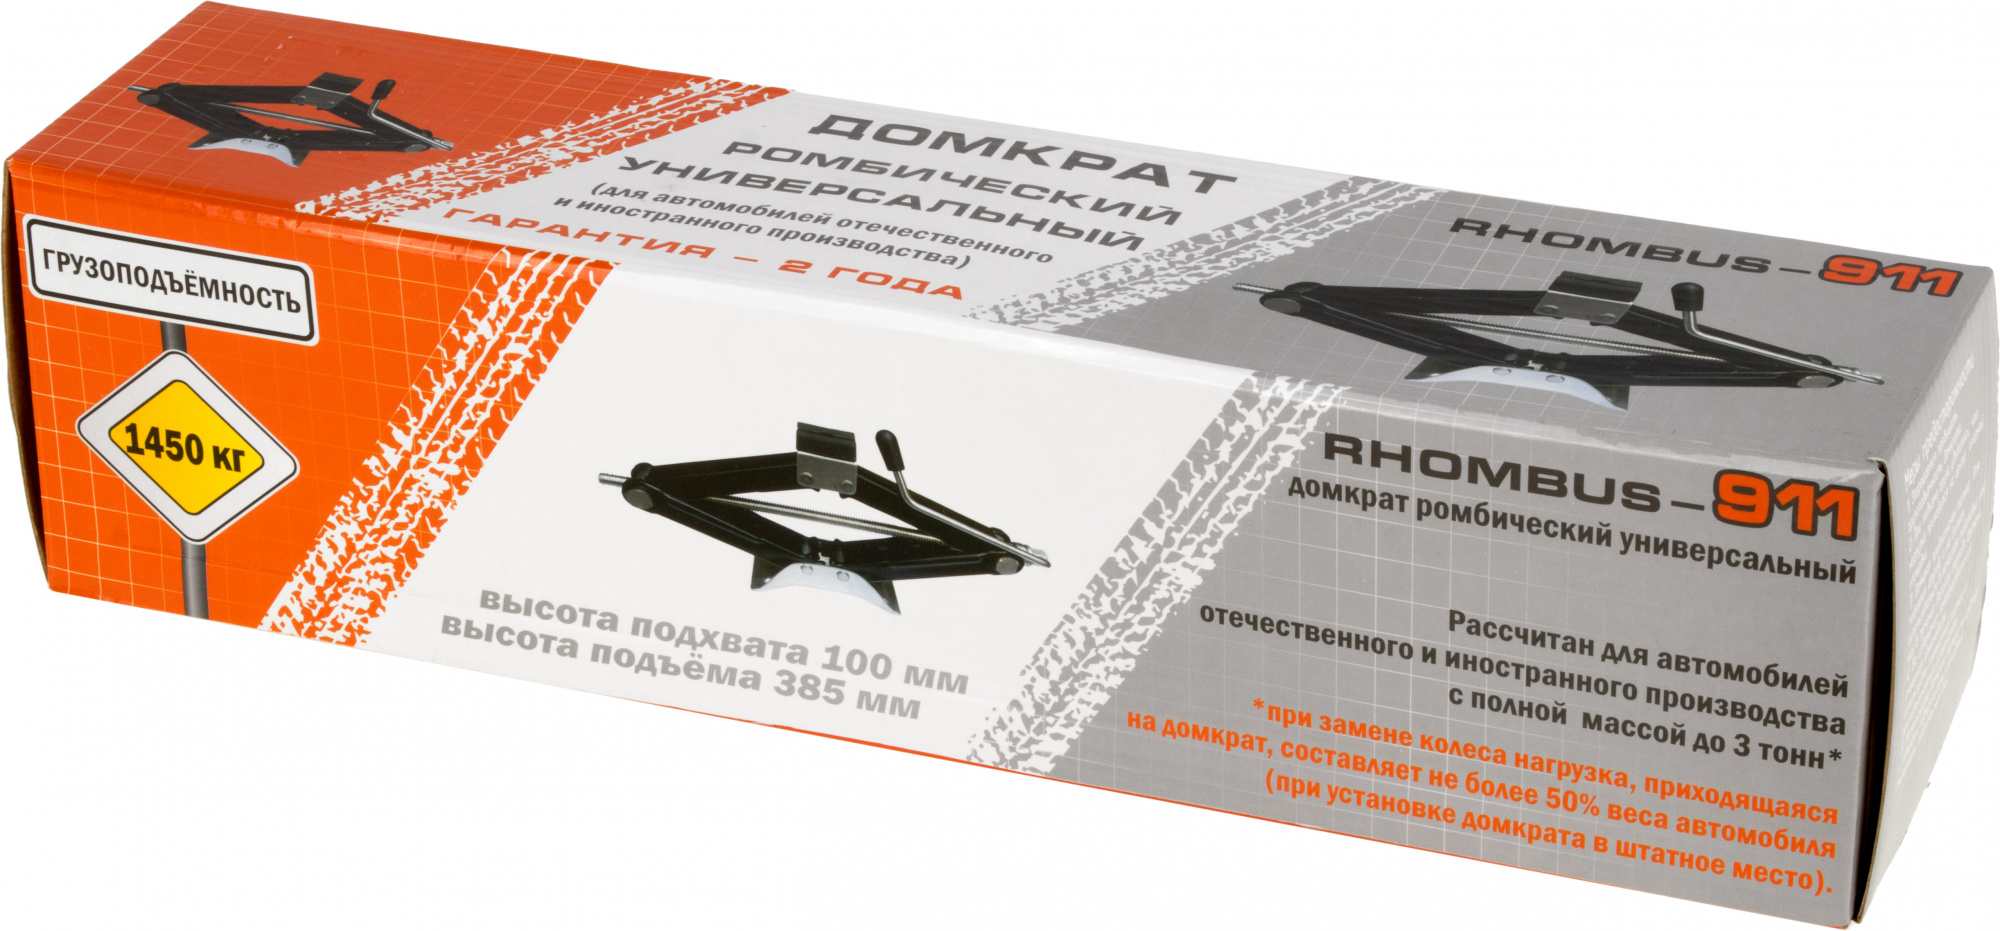 Домкрат Azard RНOMBUS-911 ромбический механический ченрый (DOMK0002)